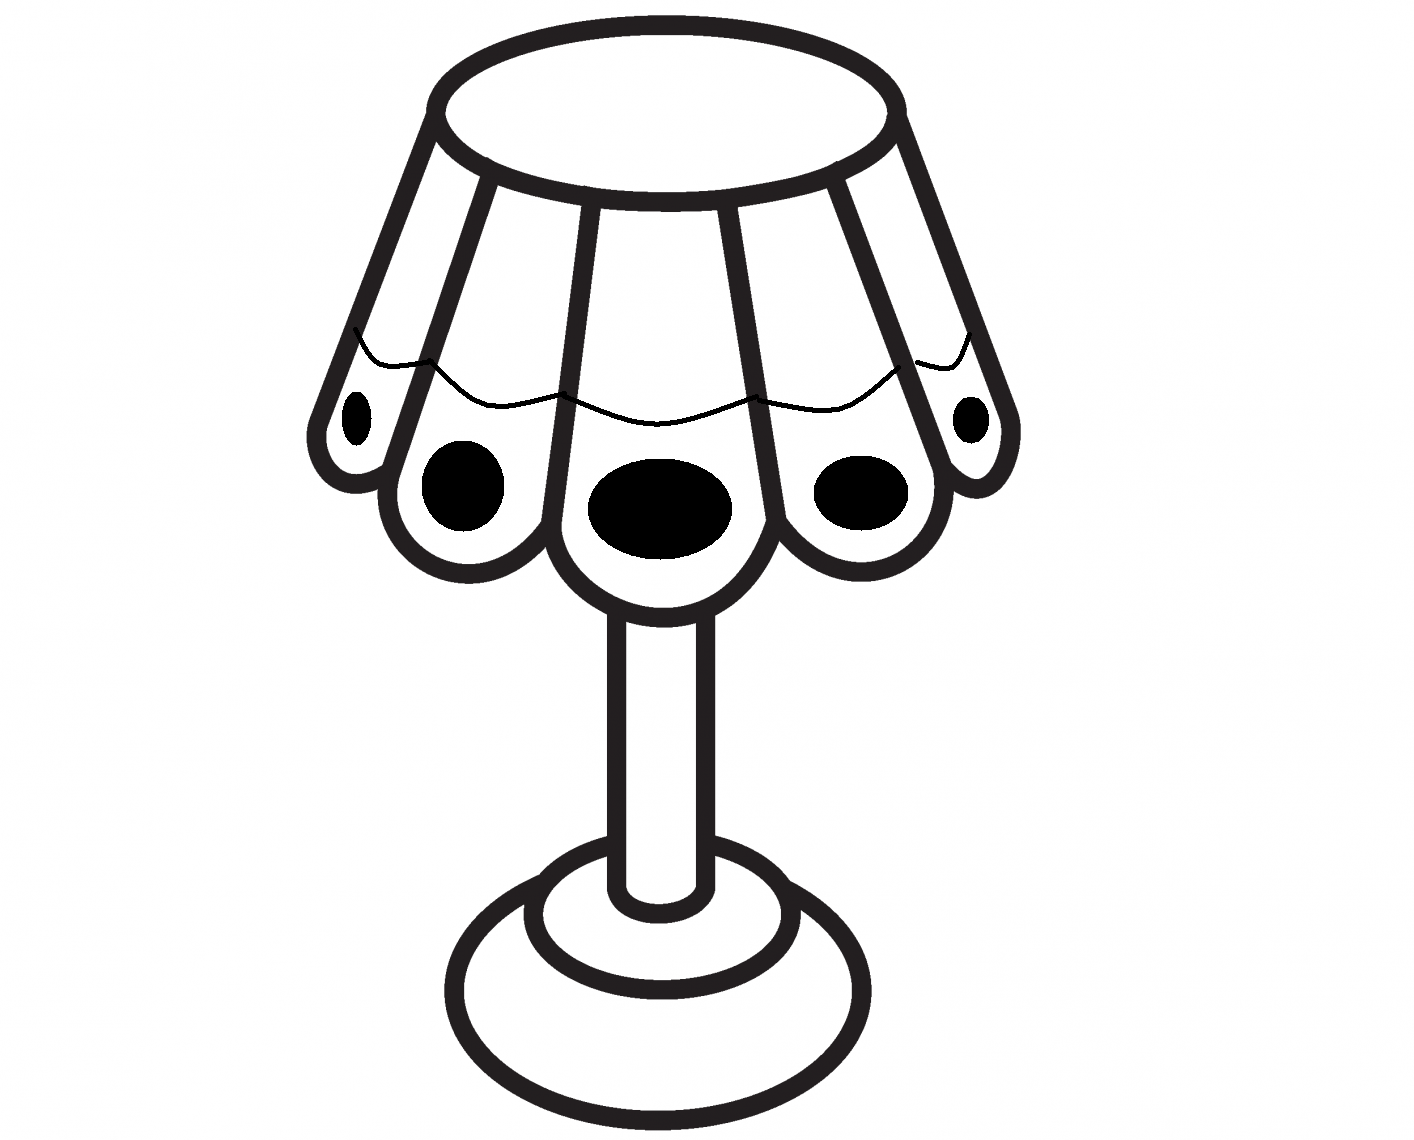 Lamp Drawing at GetDrawings Free download